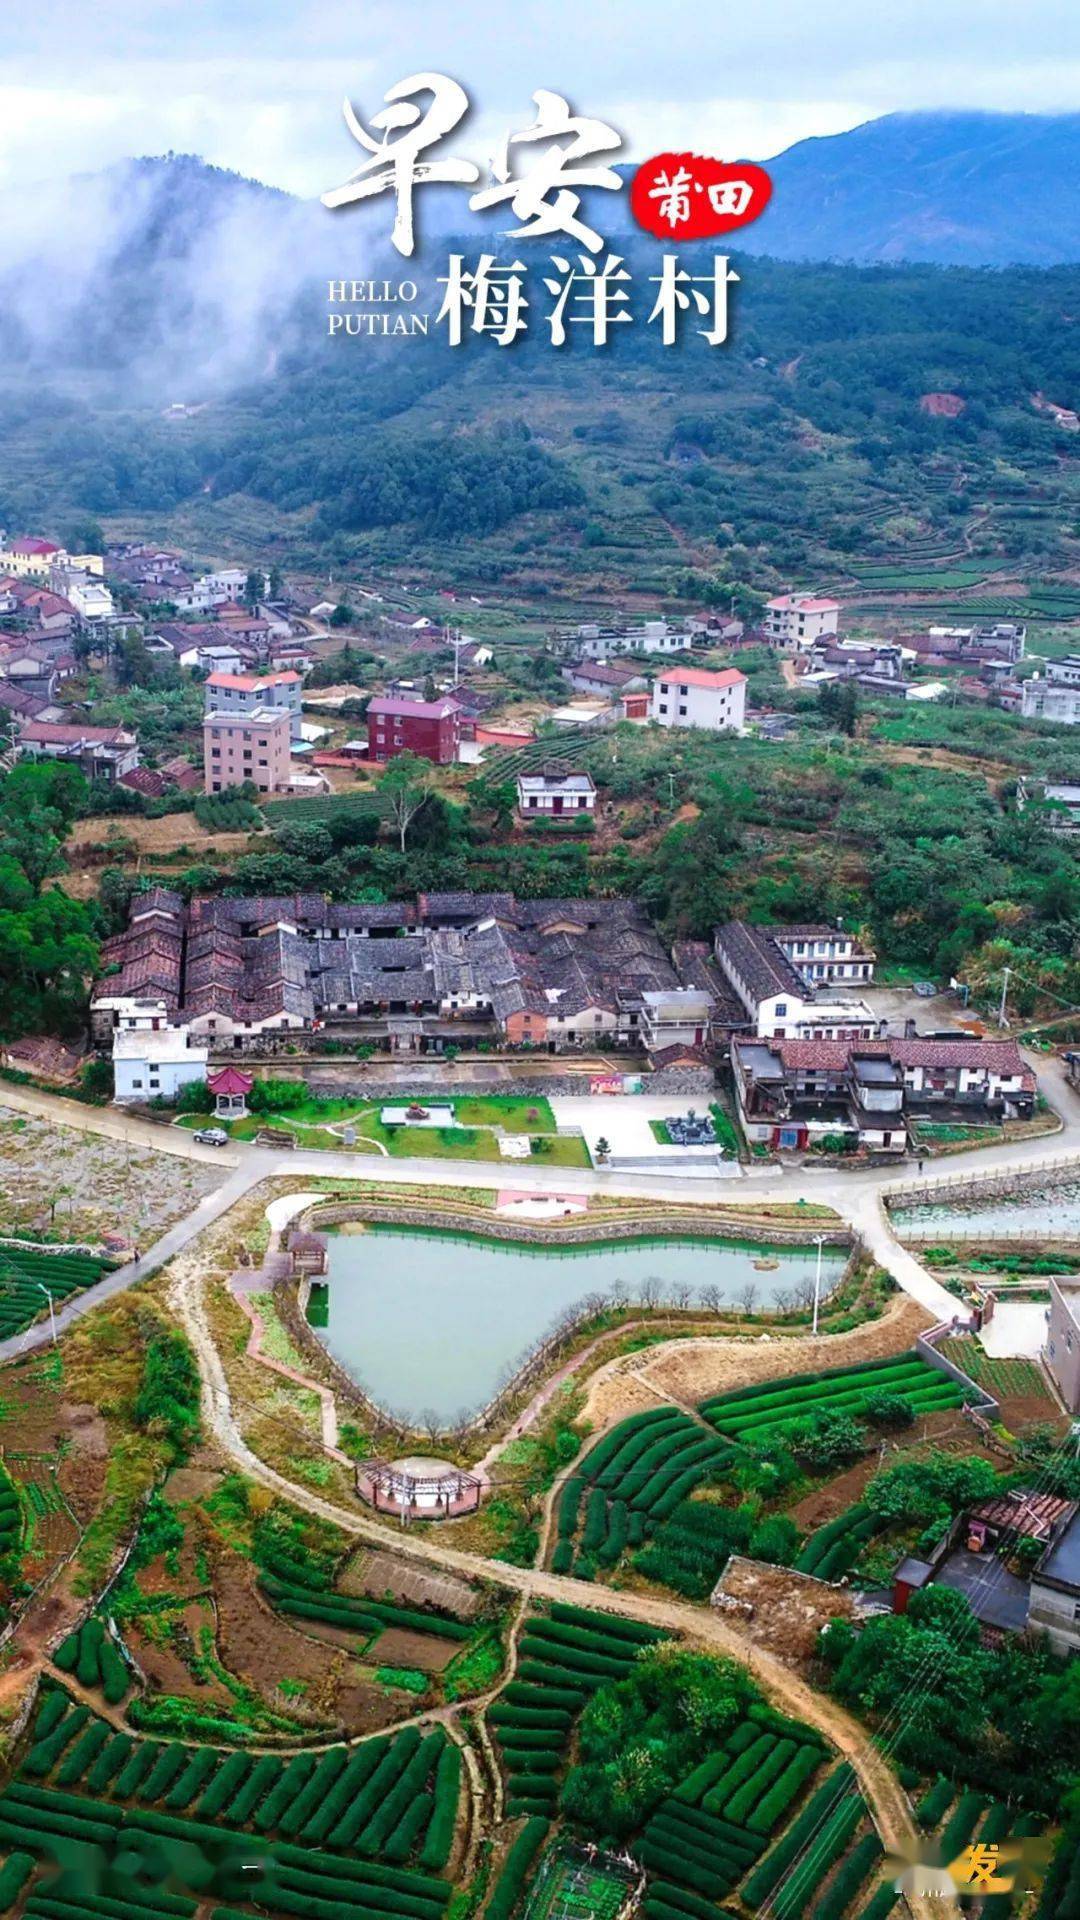 梅洋村,位于莆田市涵江区萩芦镇,地处群山深处的小盆地,海拔460米